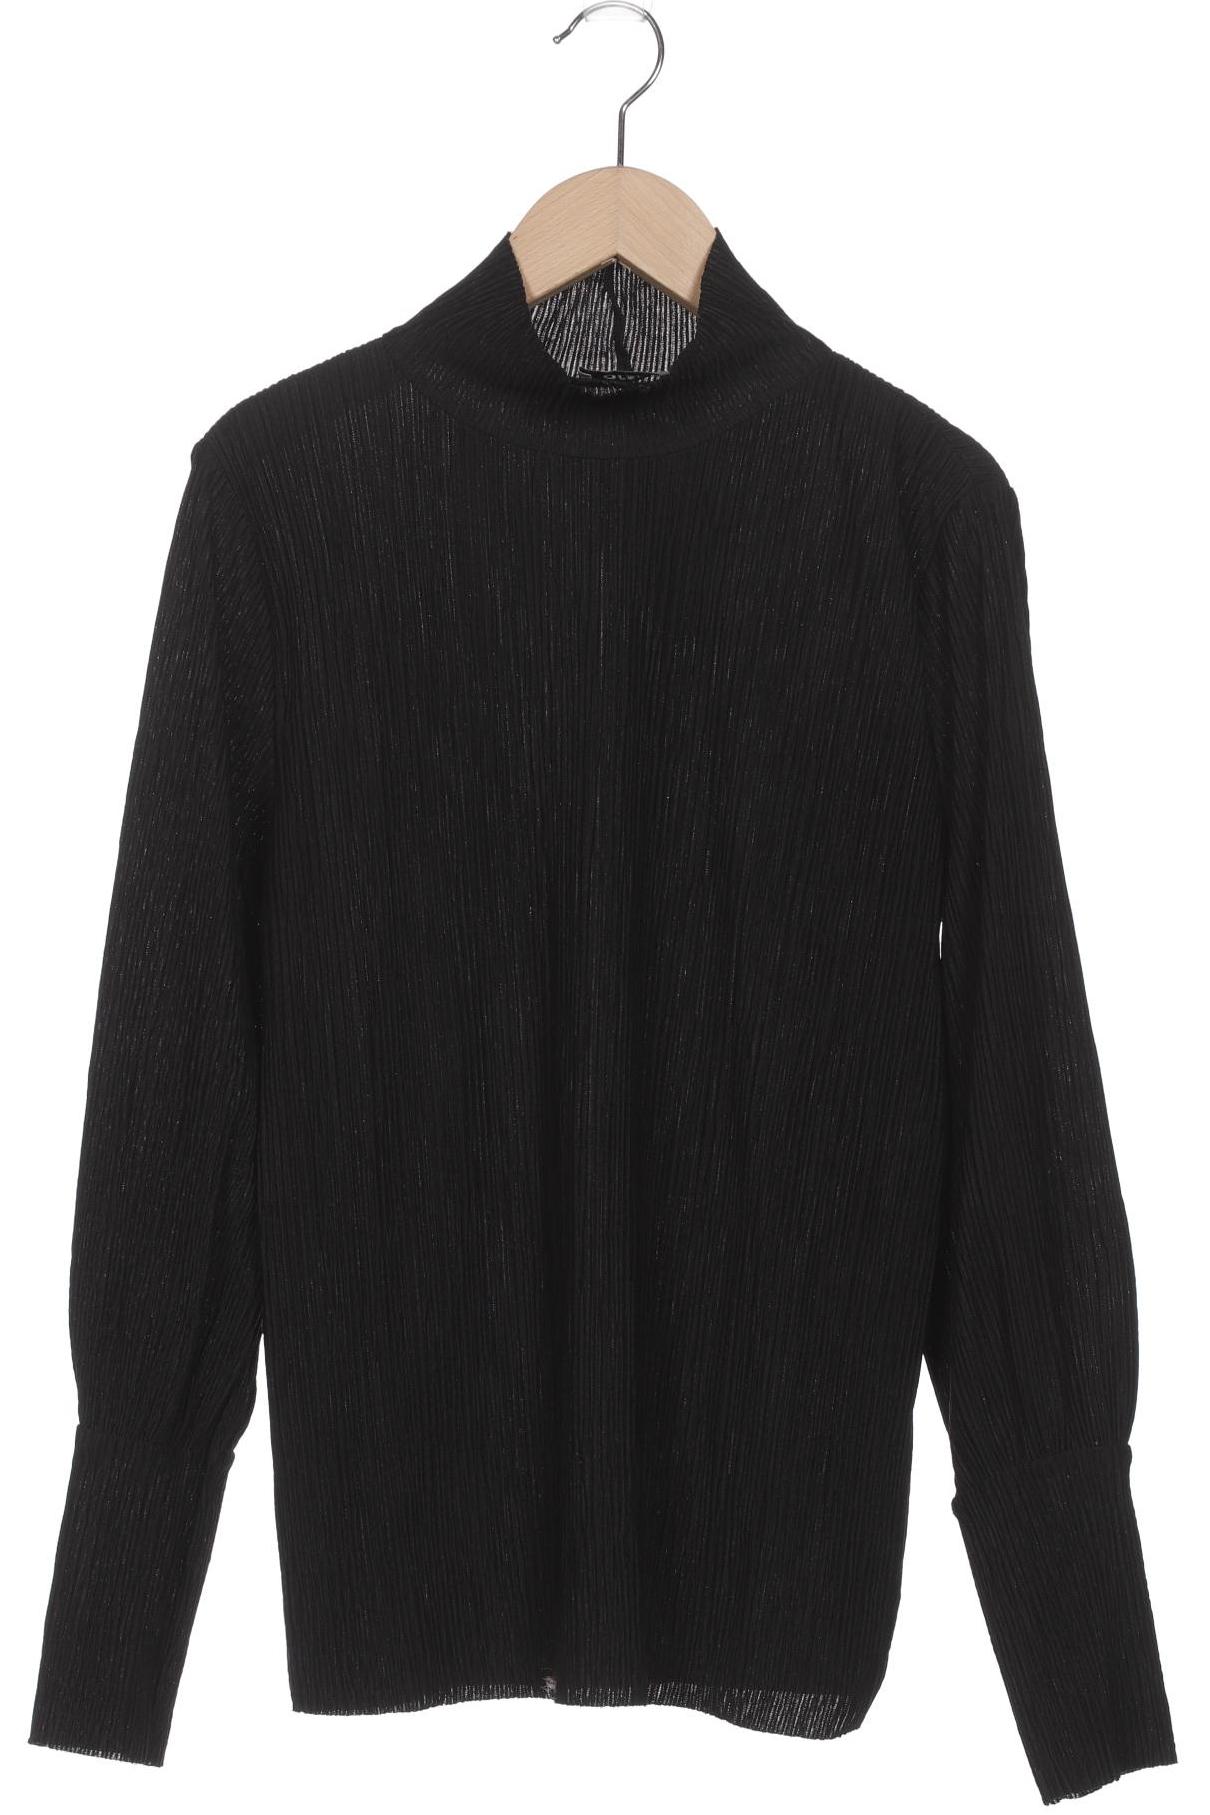 Orsay Damen Langarmshirt, schwarz, Gr. 38 von Orsay